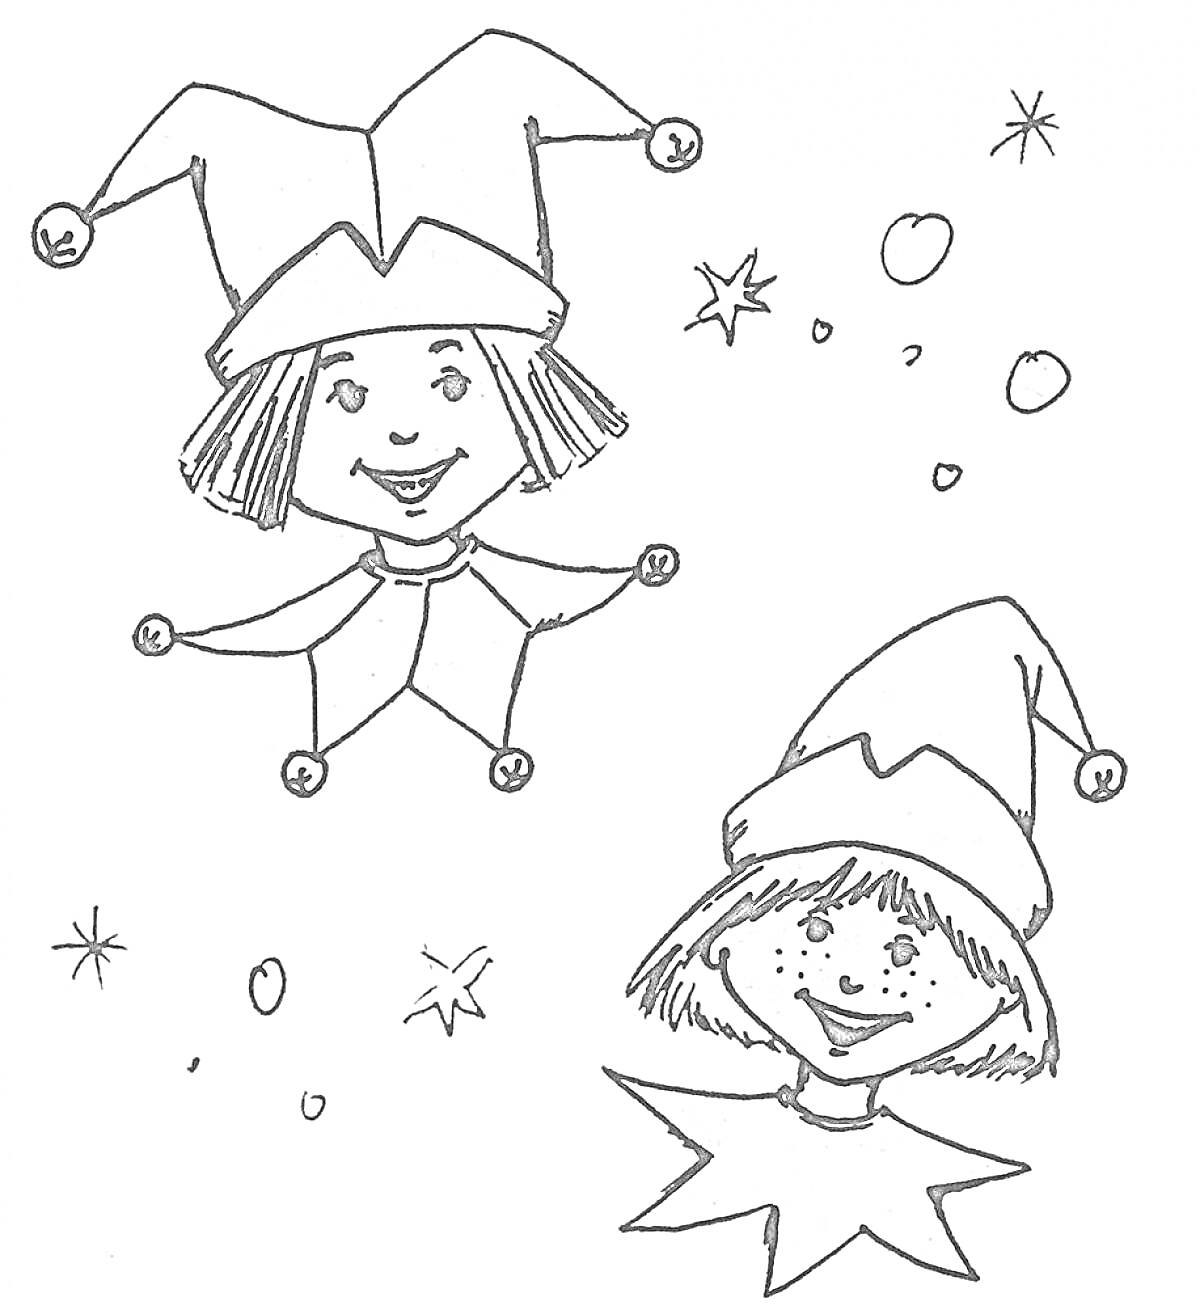 Две куклы Петрушки с колпаками, звездами и кружками